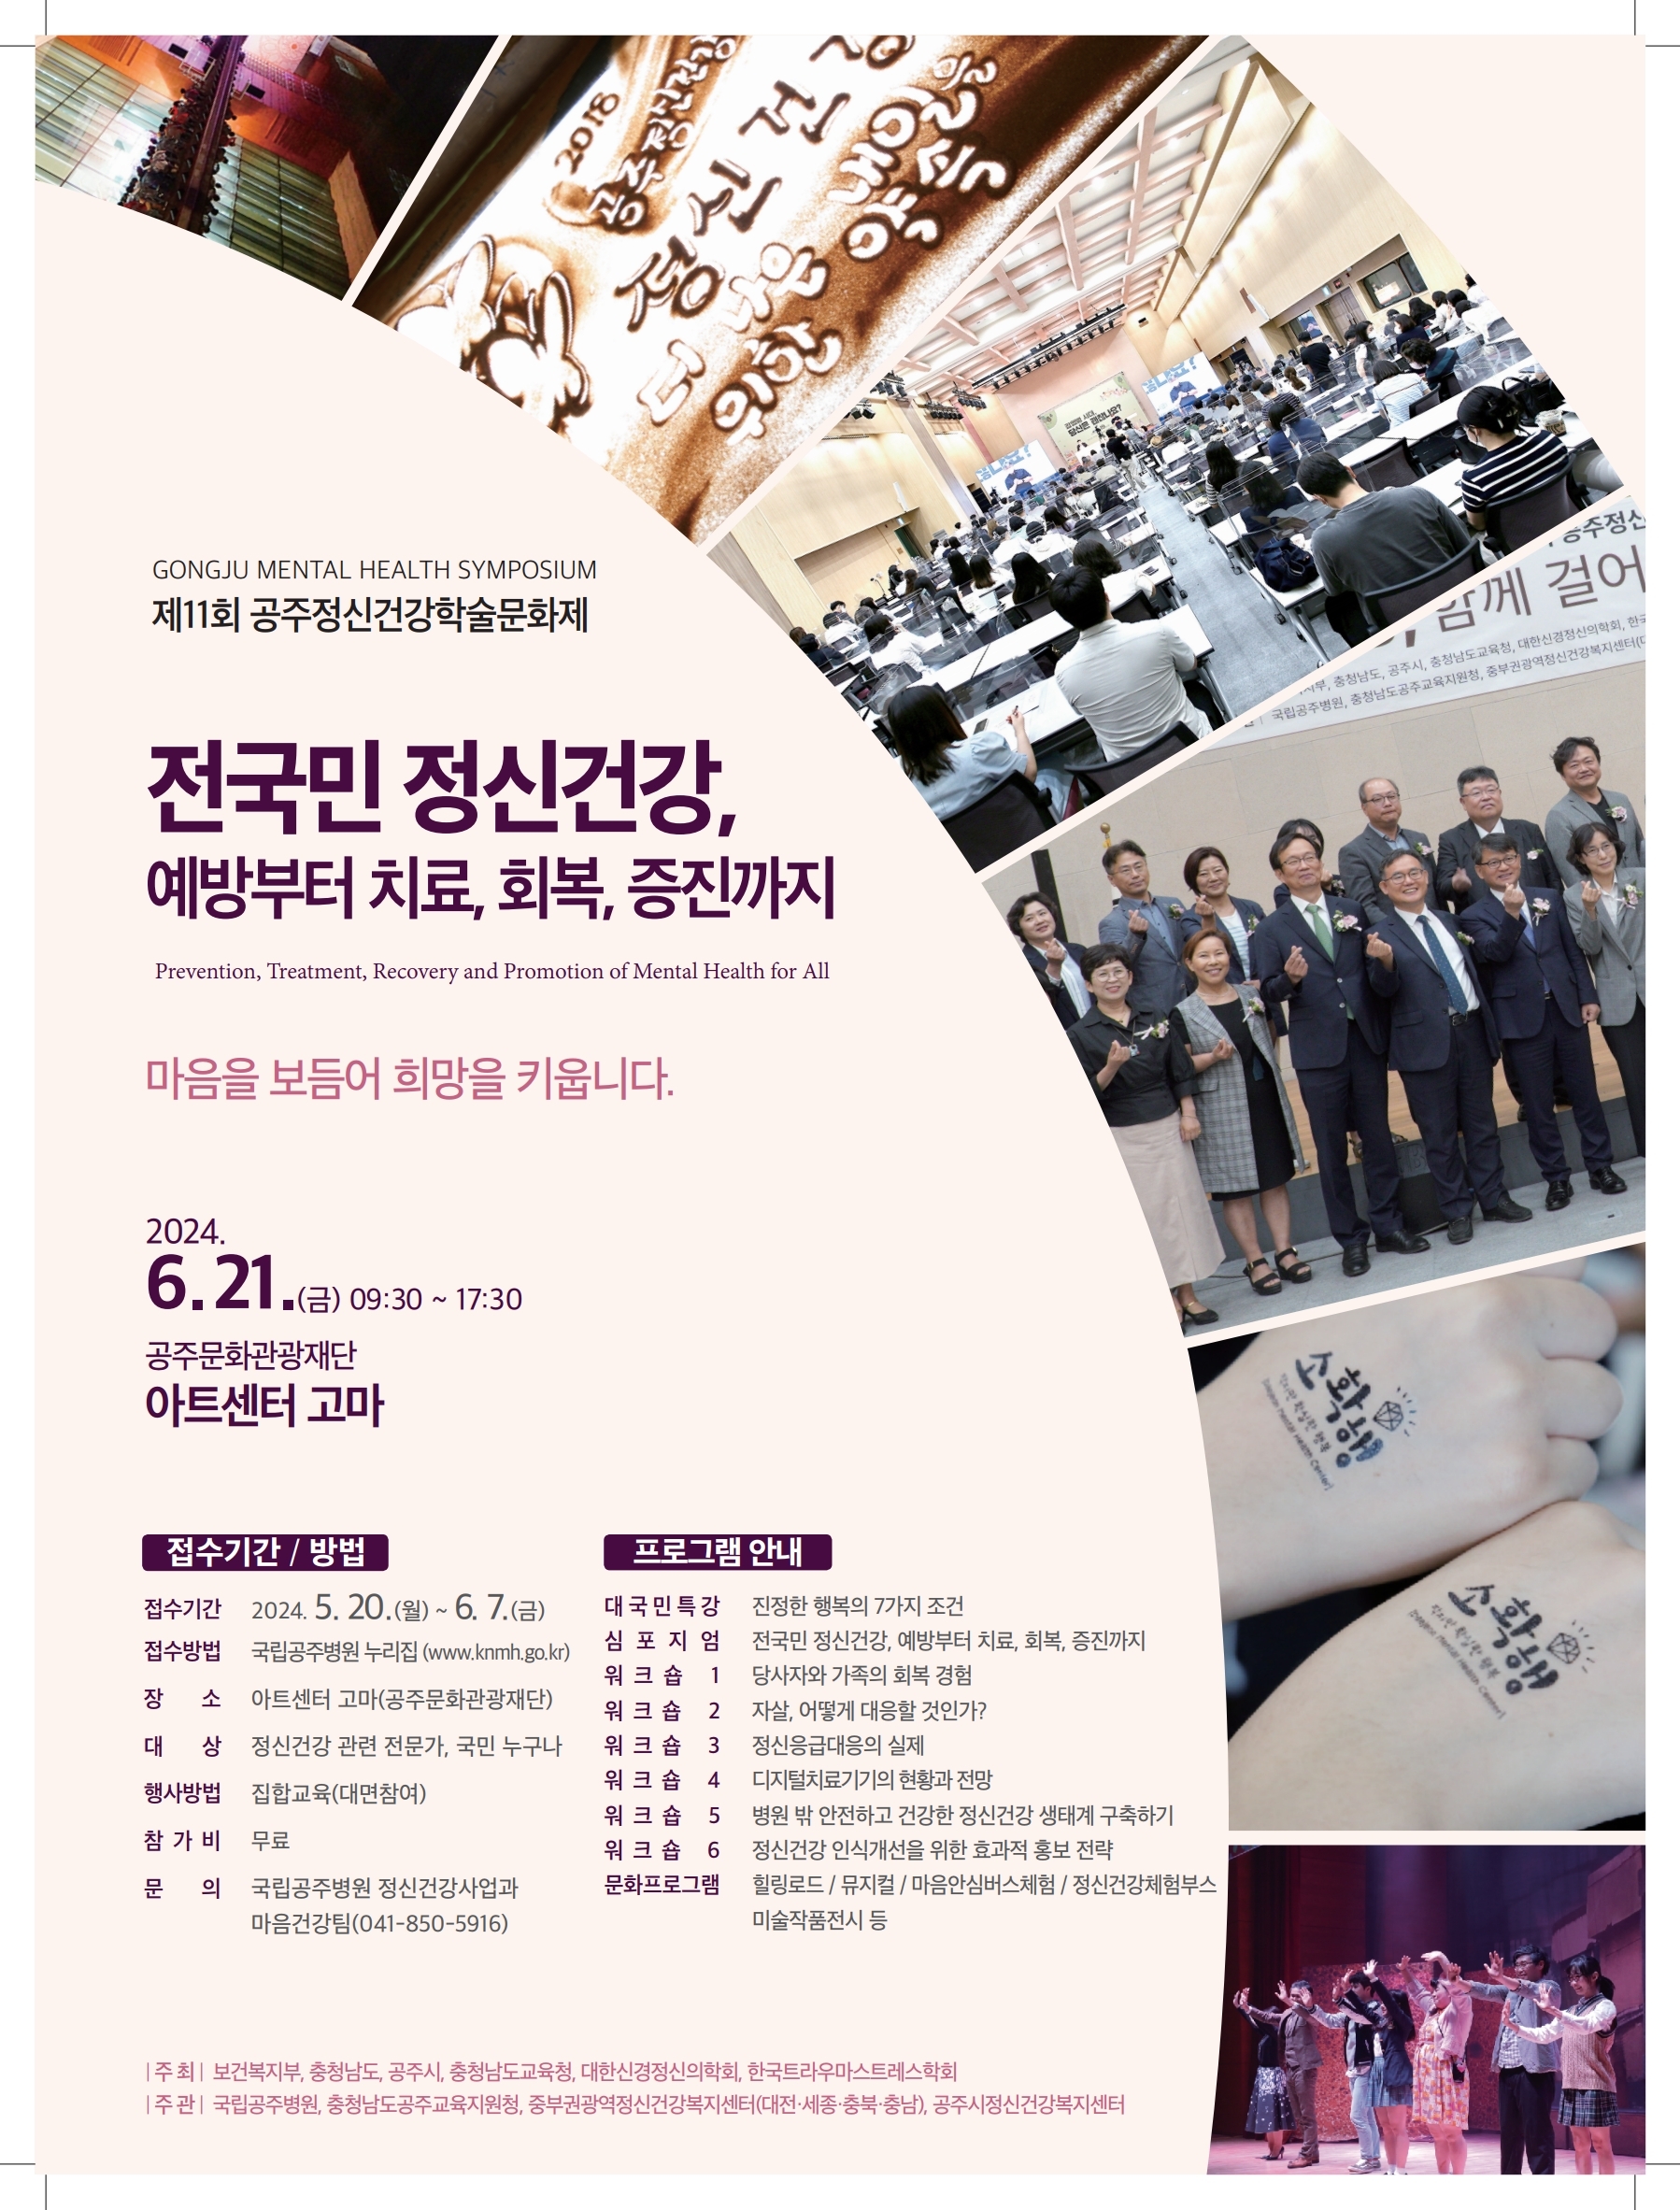 gongju mental health symposium 제11회 공주정신건강학술문화제 전국민 정신건강, 예방부터 치료, 회복, 증진까지